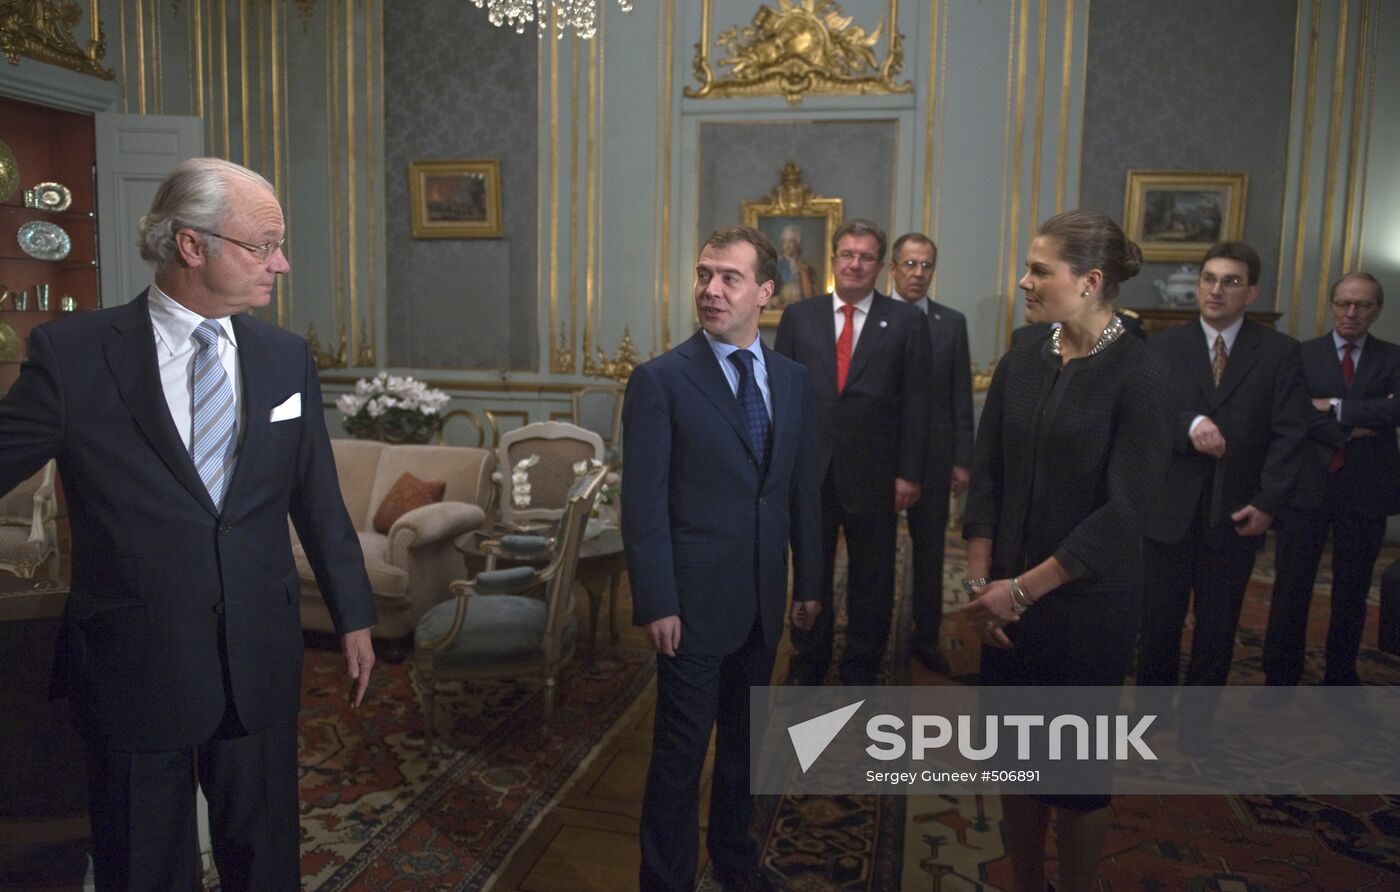 Dmitry Medvedev visits Sweden